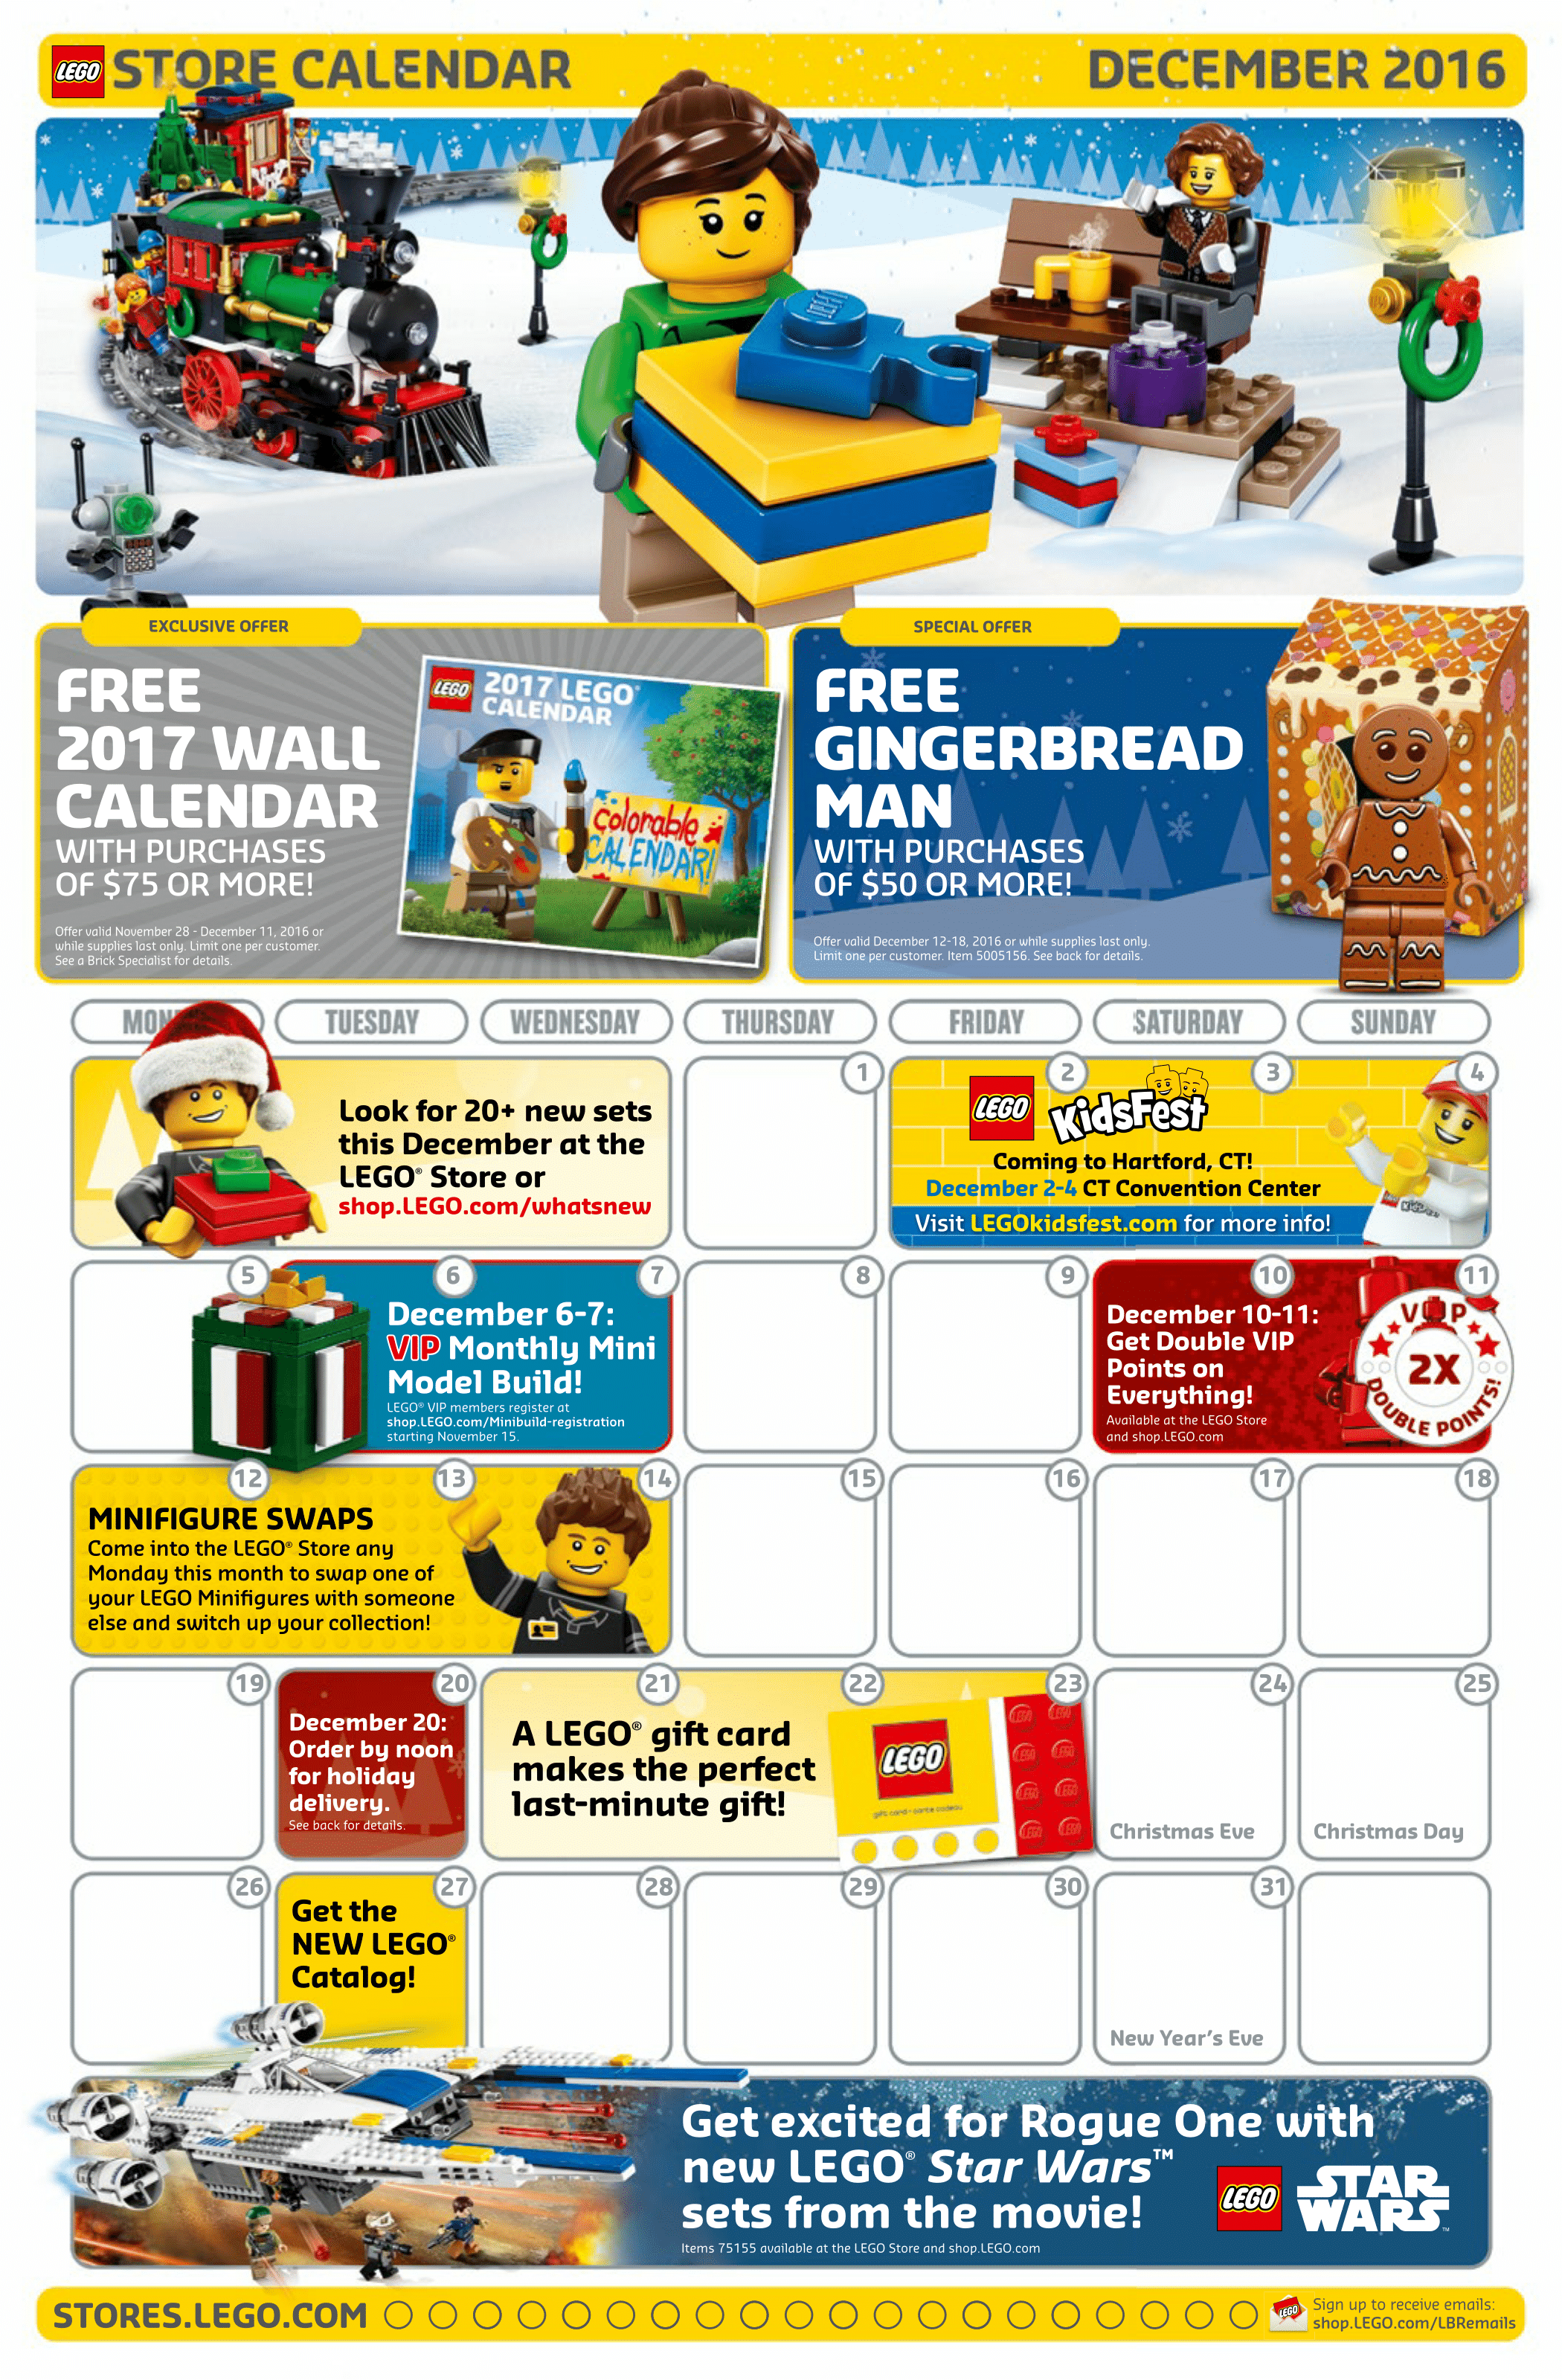 hoste sikkerhed ingeniørarbejde Lego December 2016 Store Calendar is posted - Minifigure Price Guide